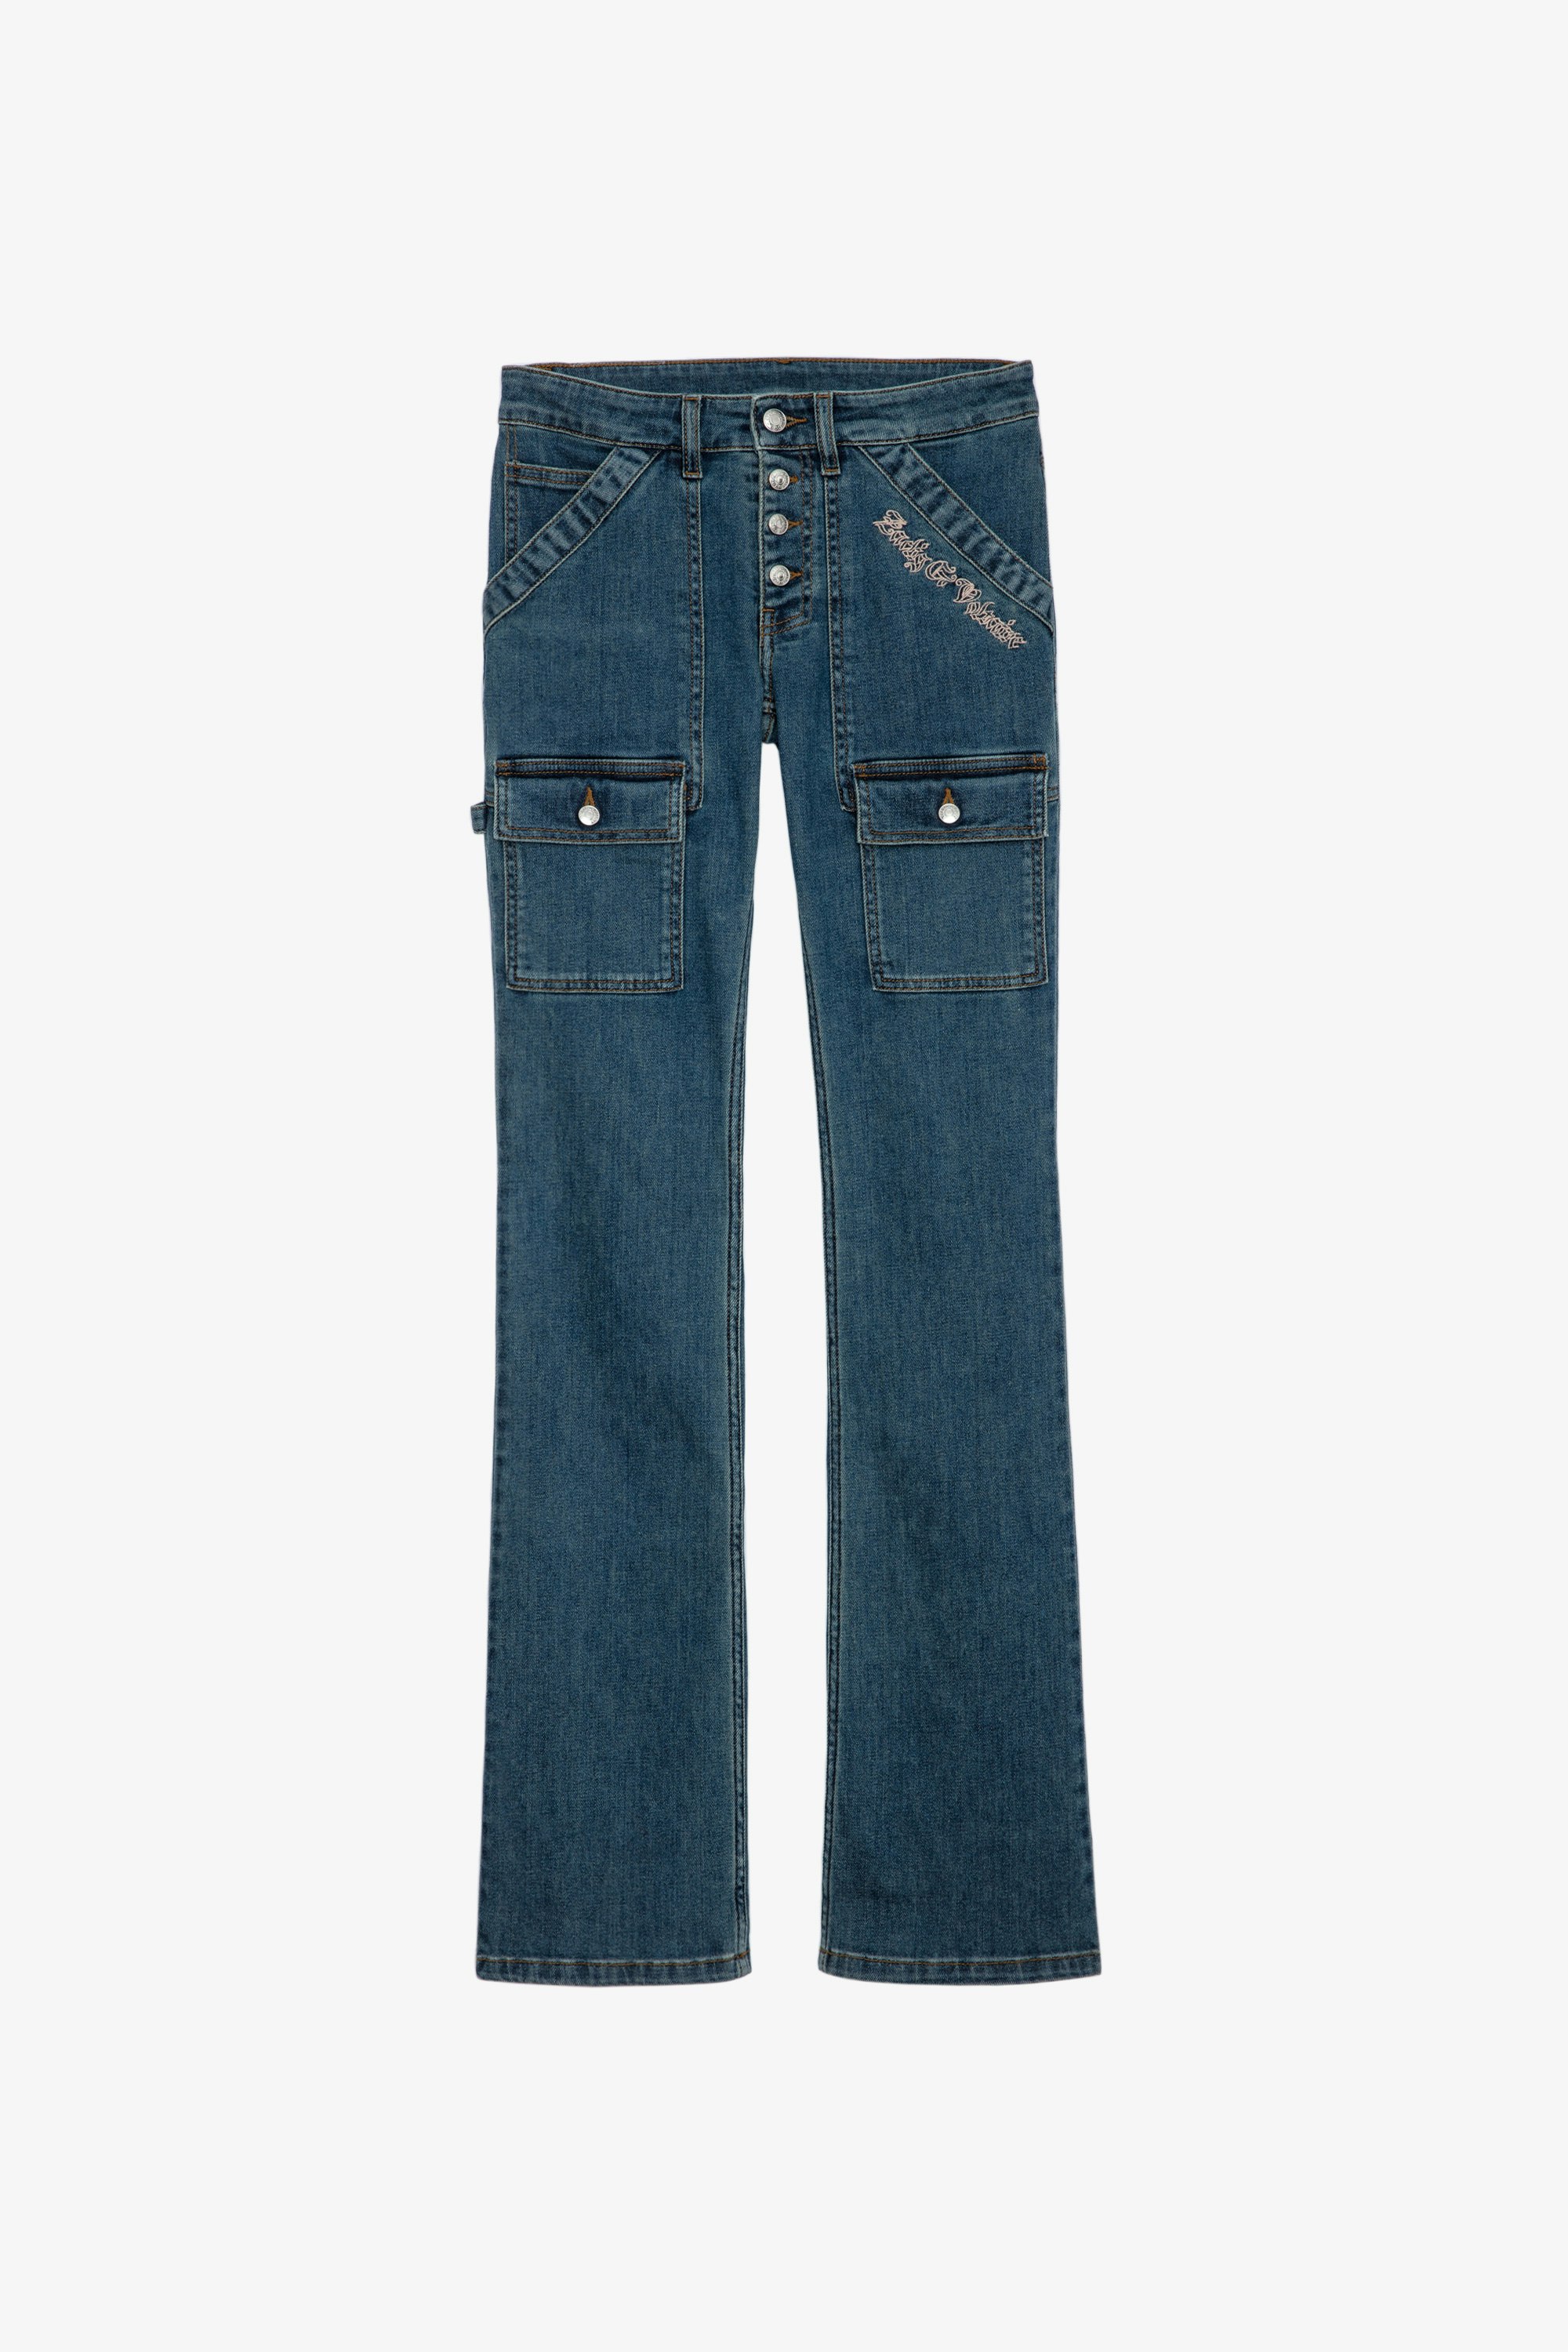 Elina Denim Jeans Women’s faded sky blue denim jeans 